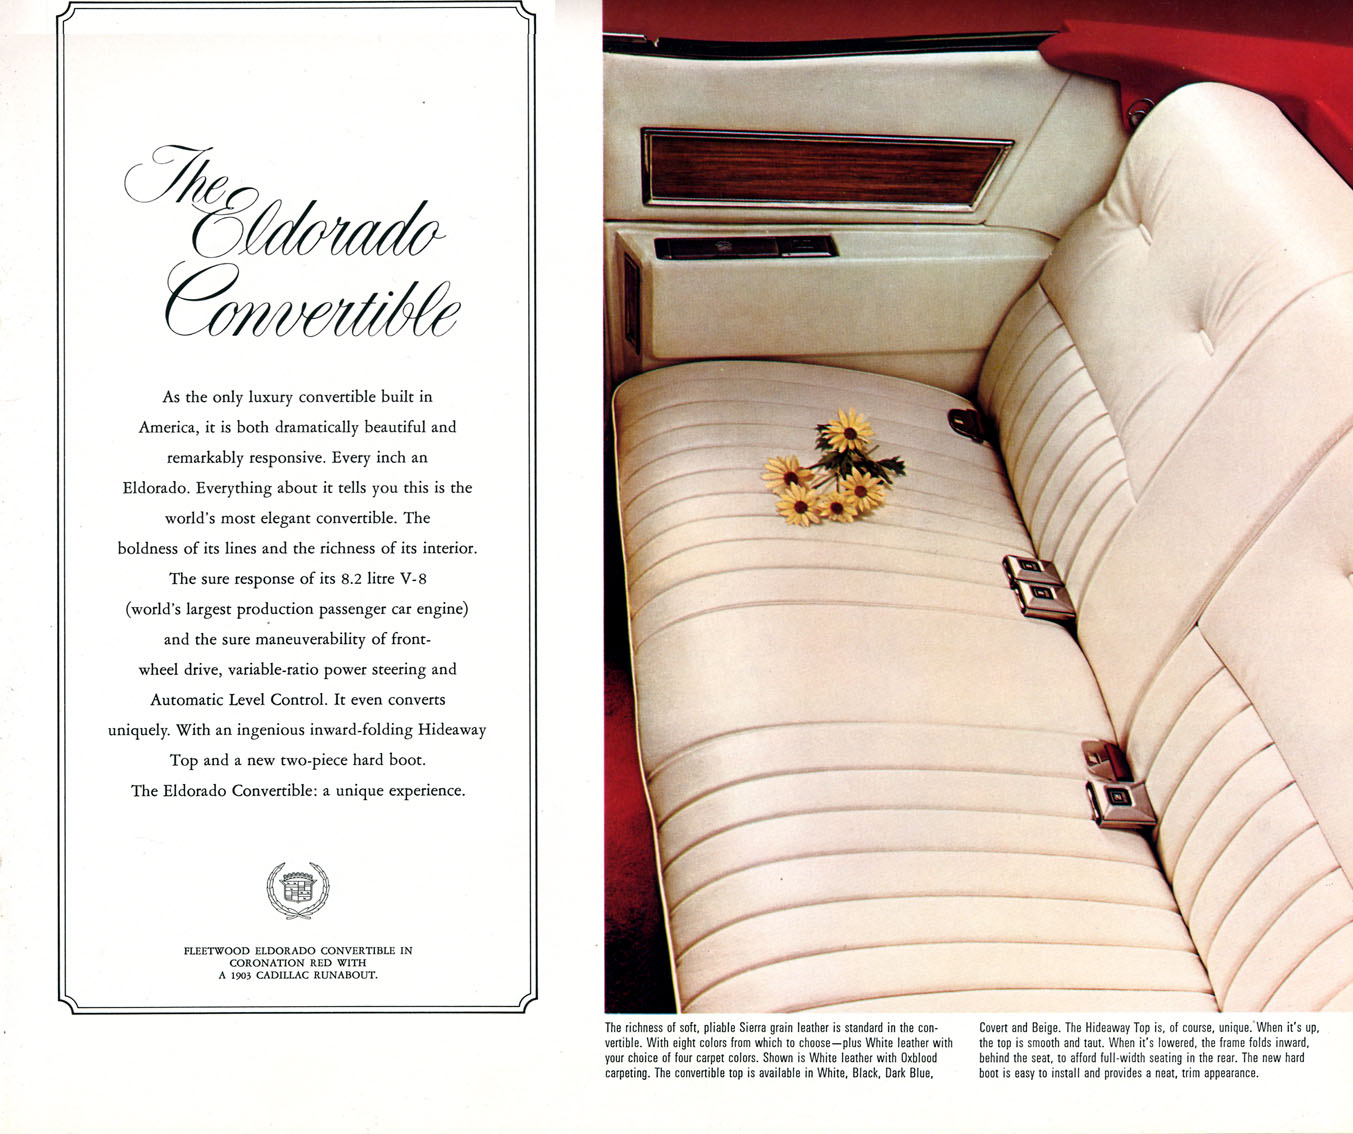 1972 Cadillac Brochure Page 10